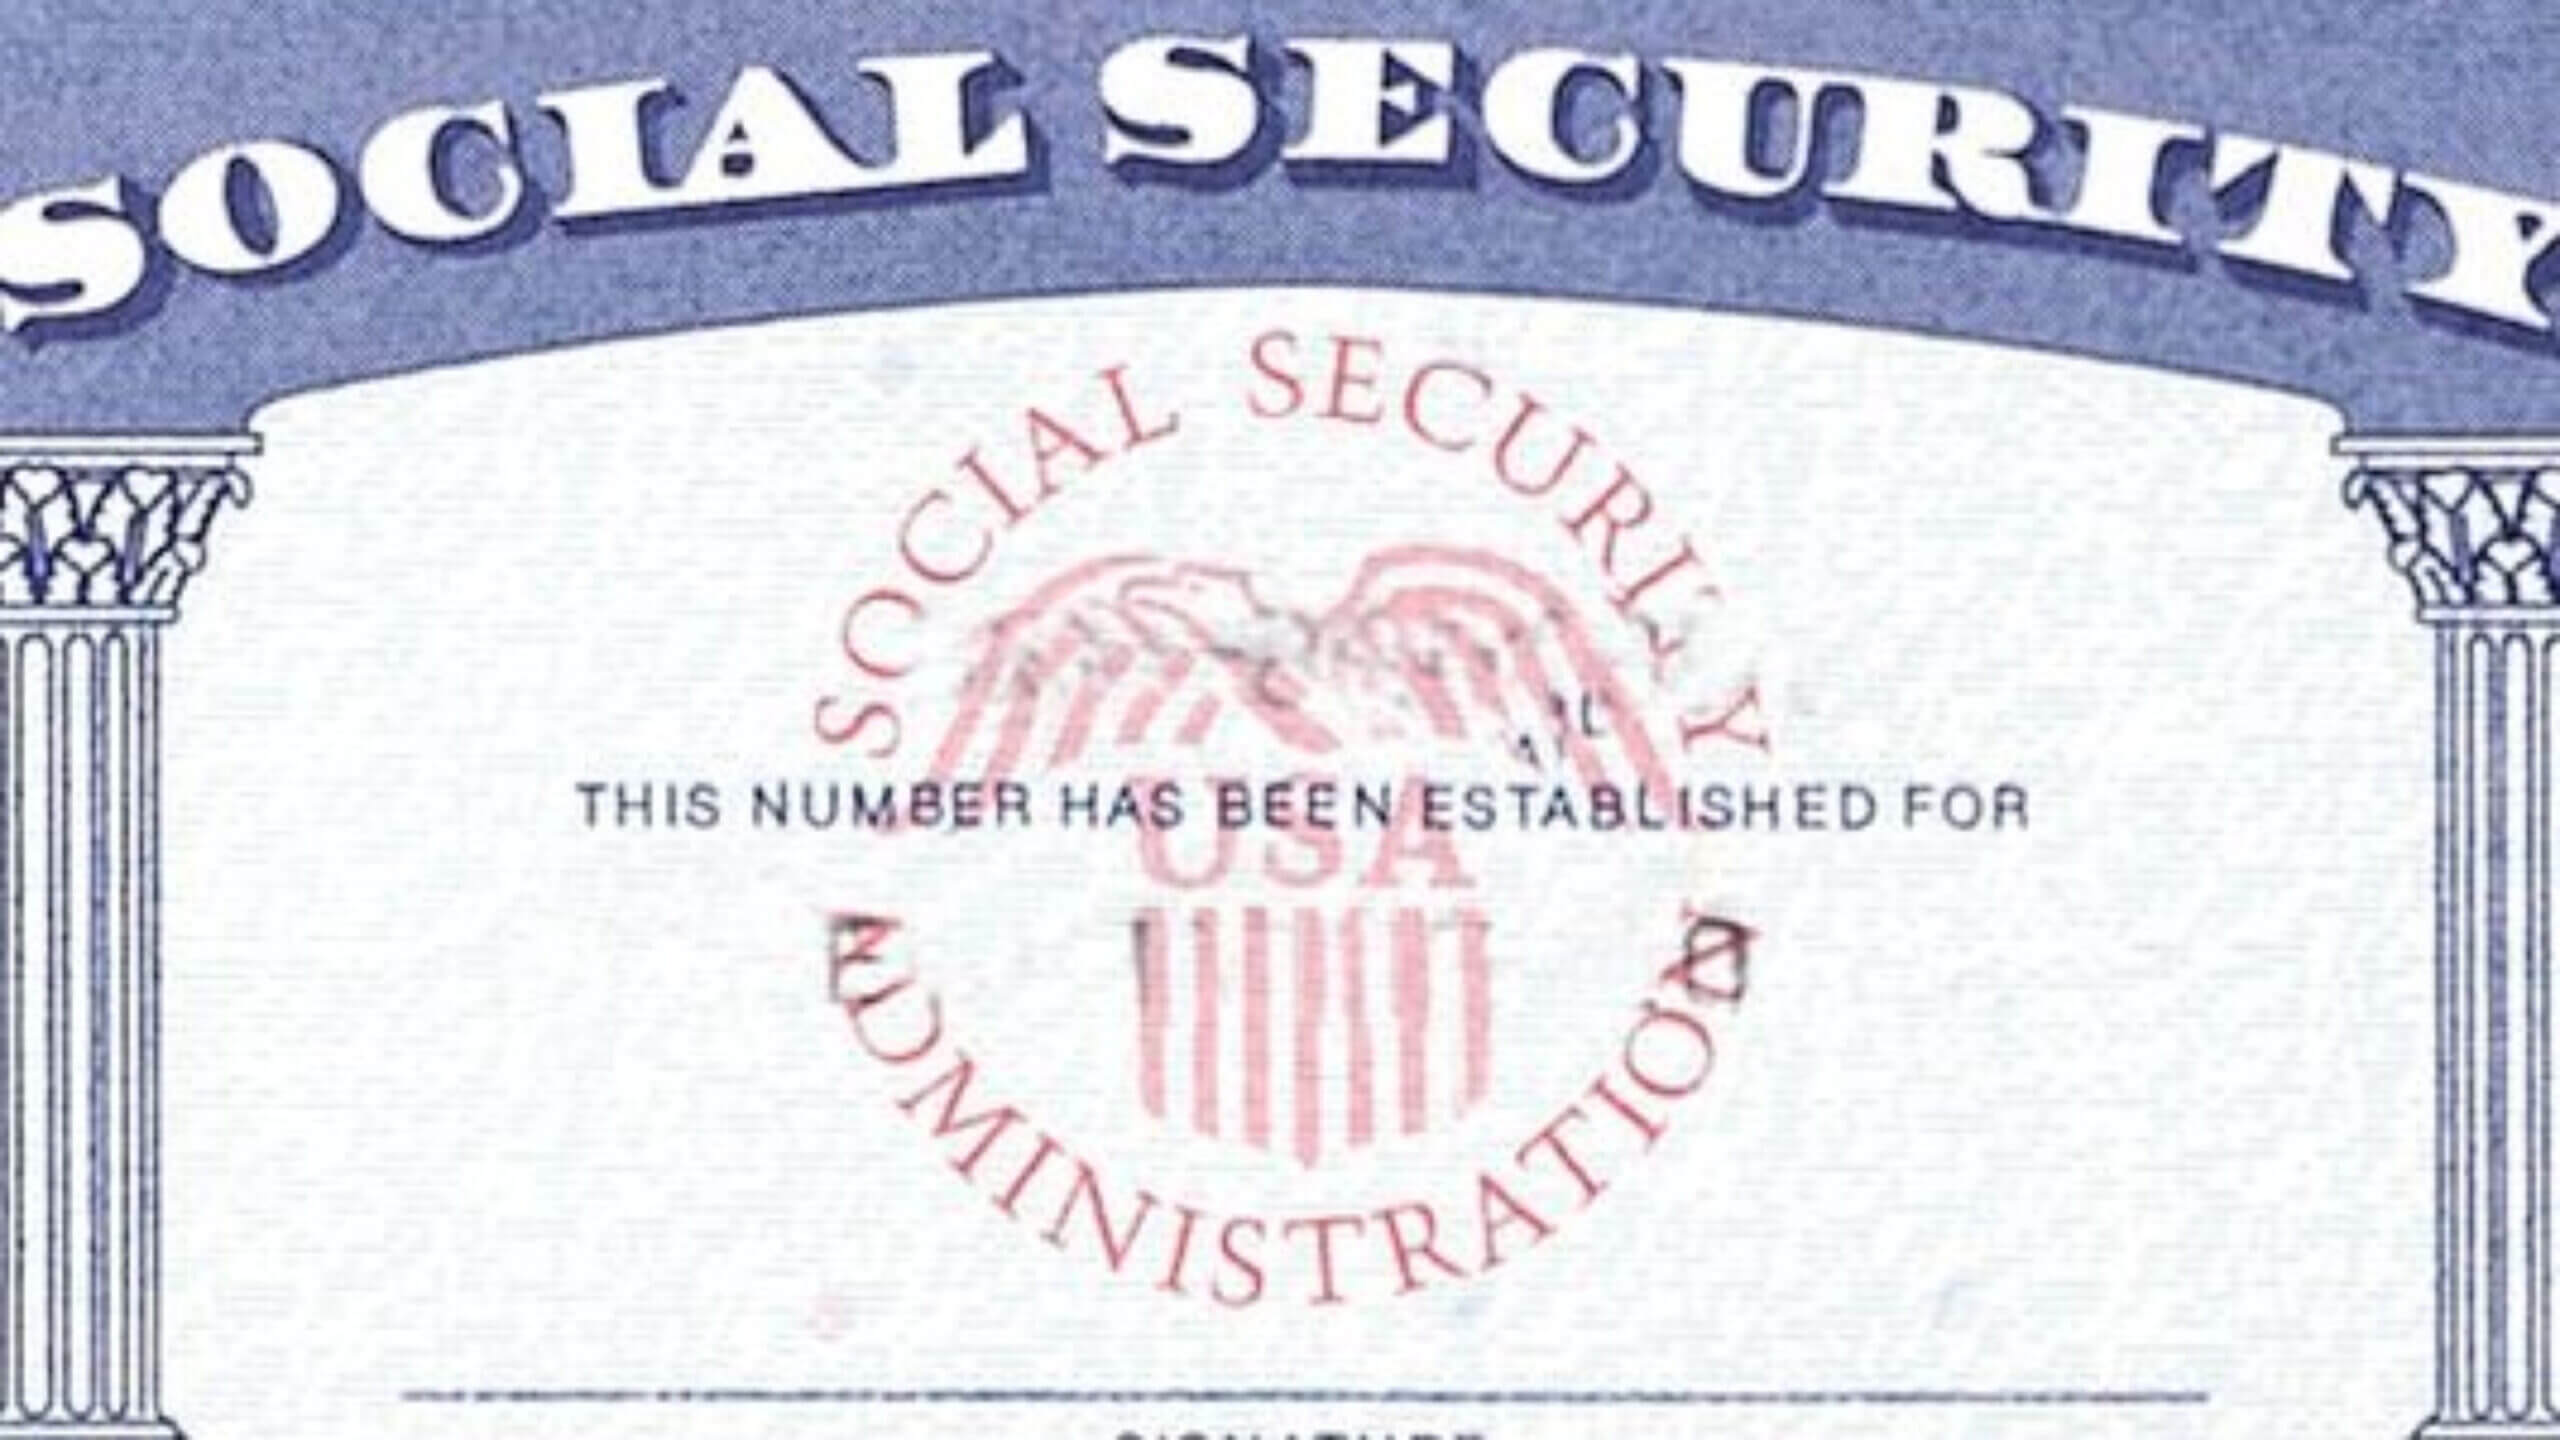 7 Social Security Card Template Psd Images - Social Security With Regard To Social Security Card Template Psd